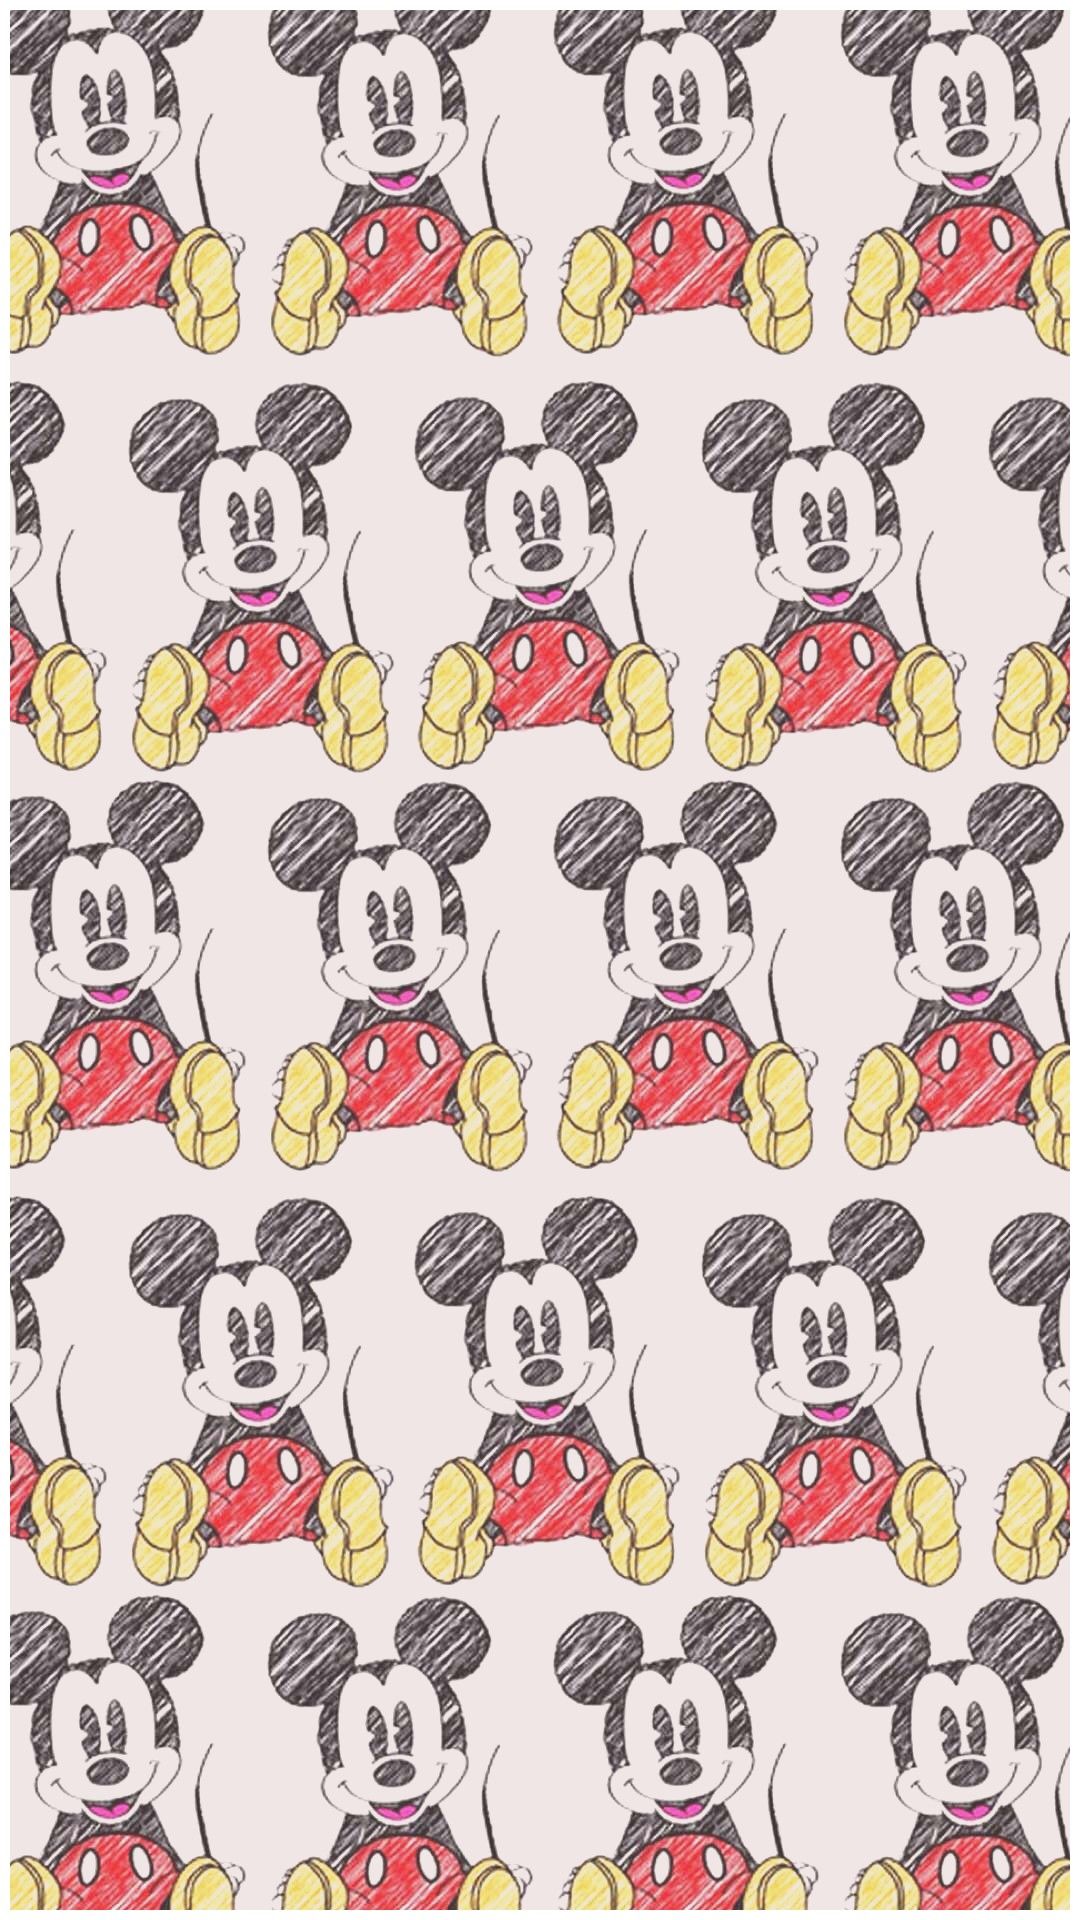 Mickey Mouse fondo de pantalla en blanco y negro Hd | Mi blog